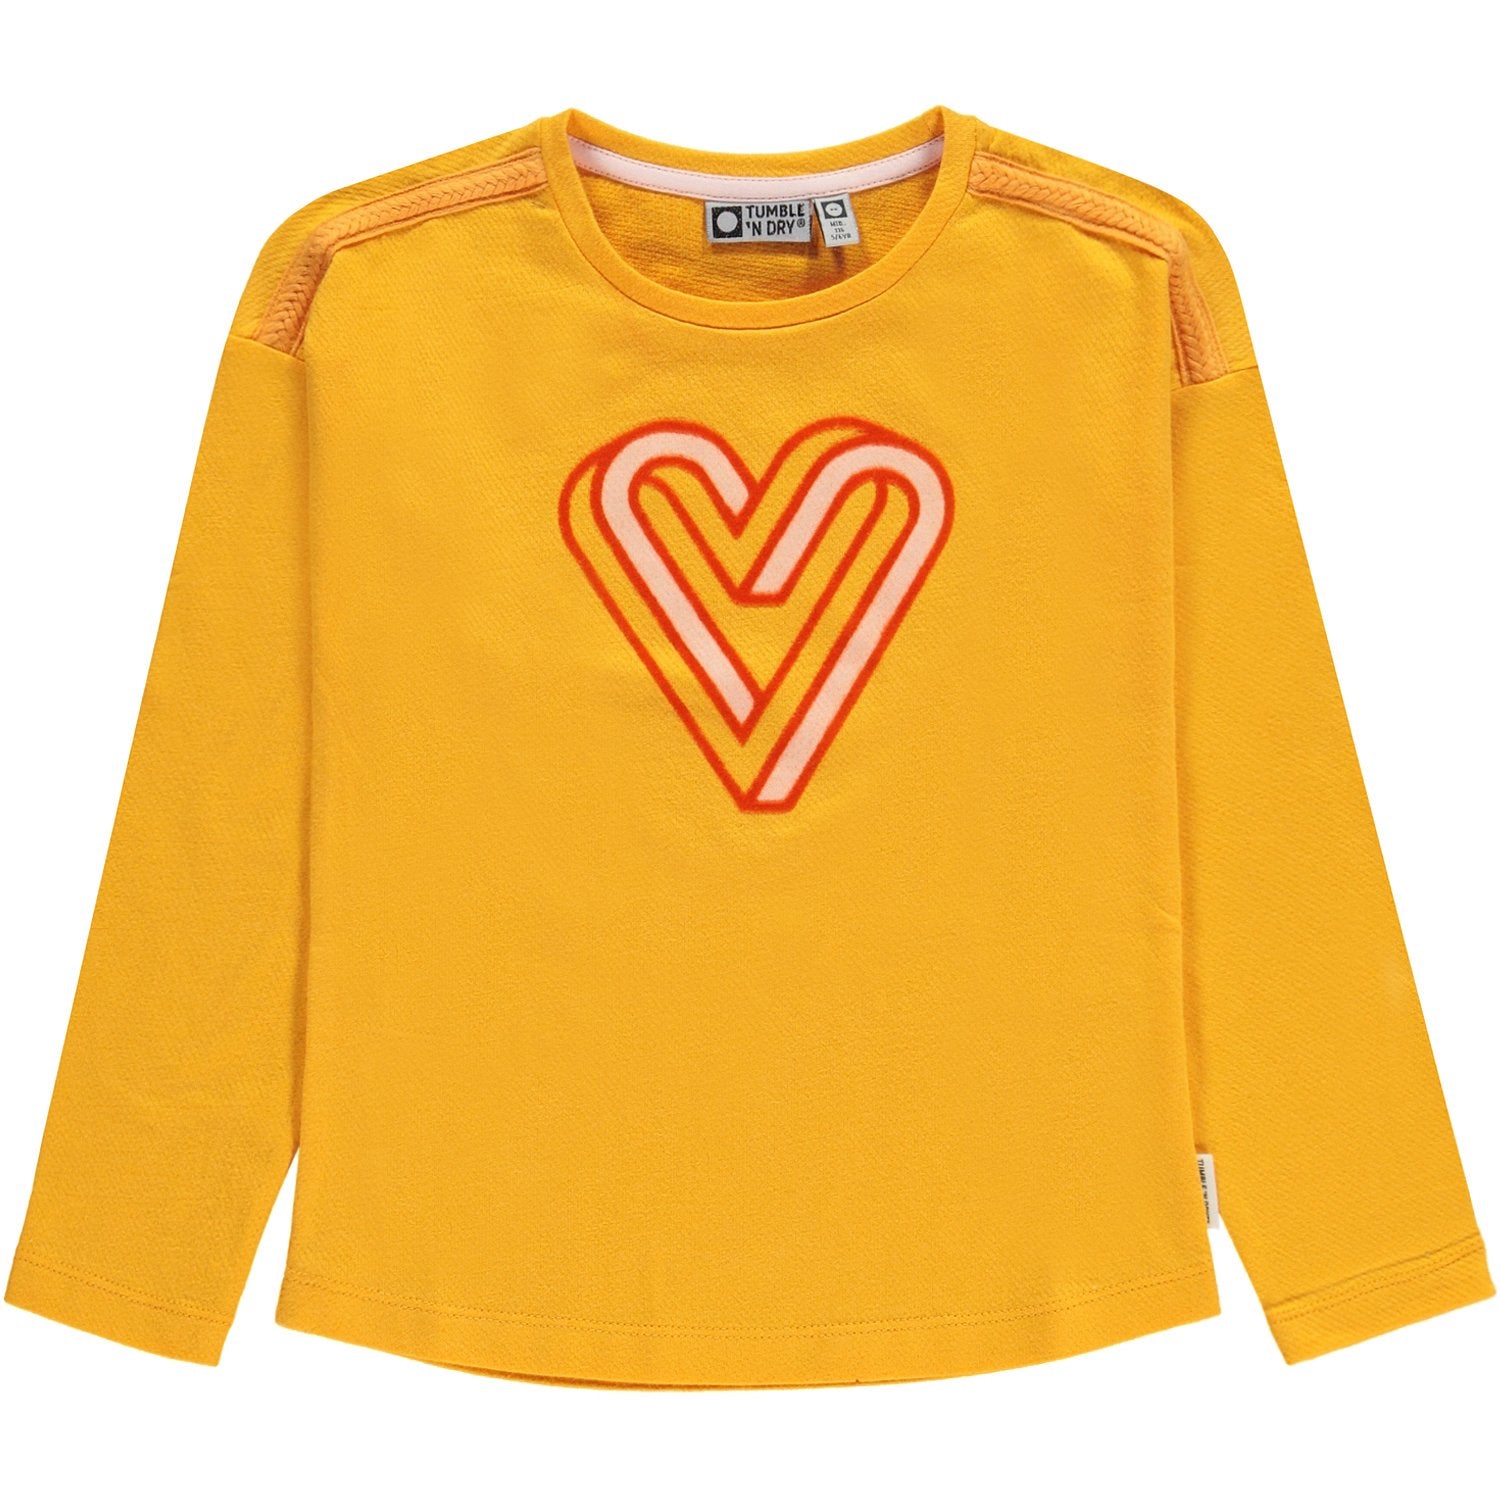 Meisjes T-shirt Lm O-hals van Tumble 'n Dry in de kleur Saffron in maat 134/140.